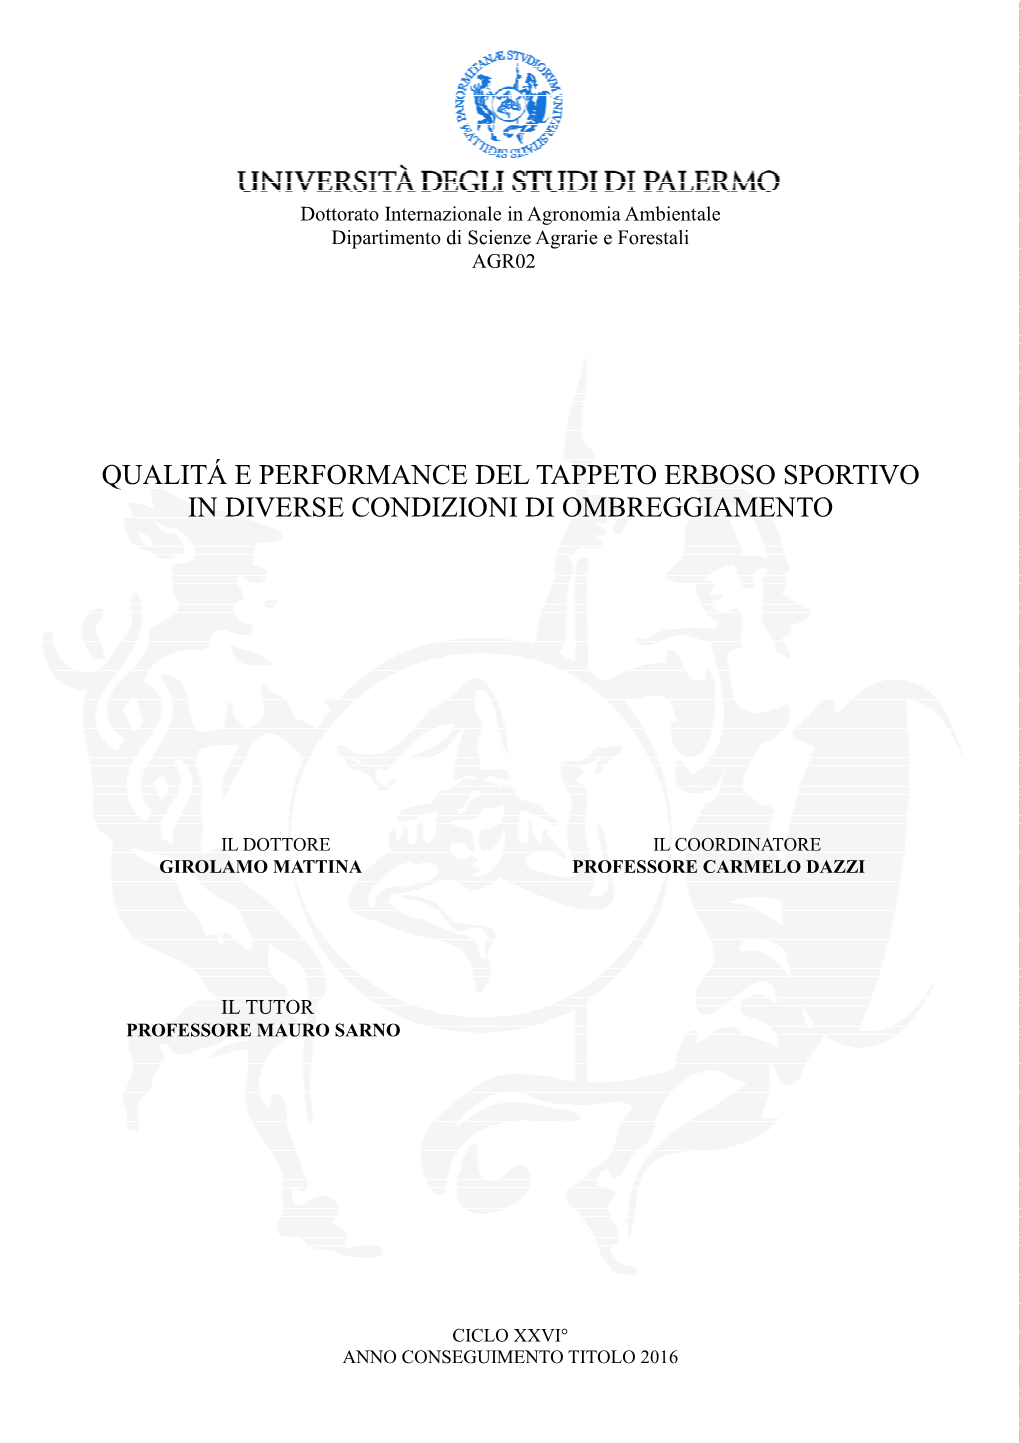 Qualitá E Performance Del Tappeto Erboso Sportivo in Diverse Condizioni Di Ombreggiamento